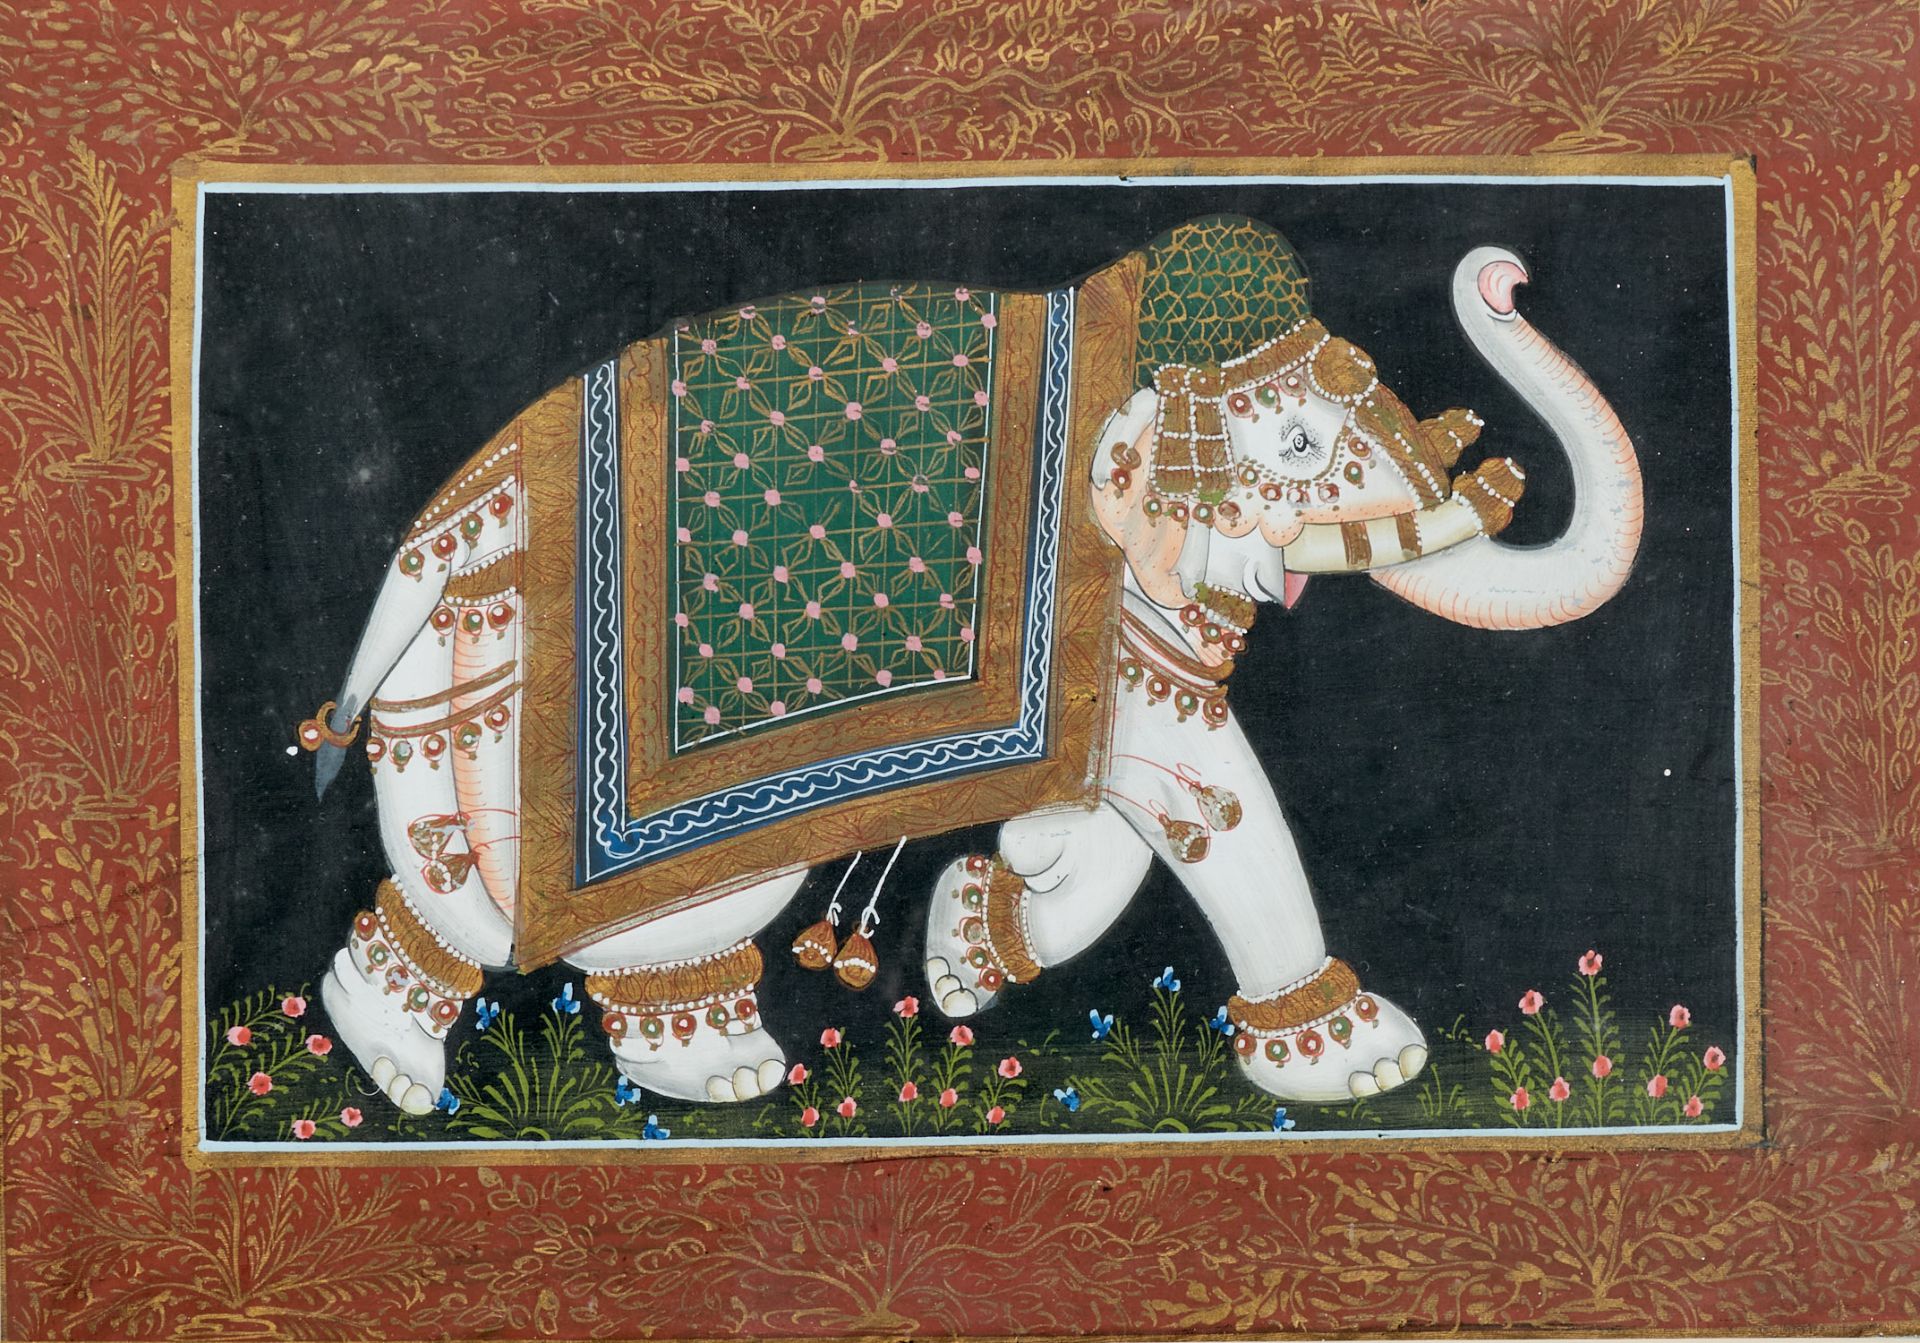 Fauna Elefanten - Schreitende Elefanten. 3 Gouachen mit Goldfarbe auf Seide. Wohl Indien oder - Bild 3 aus 3